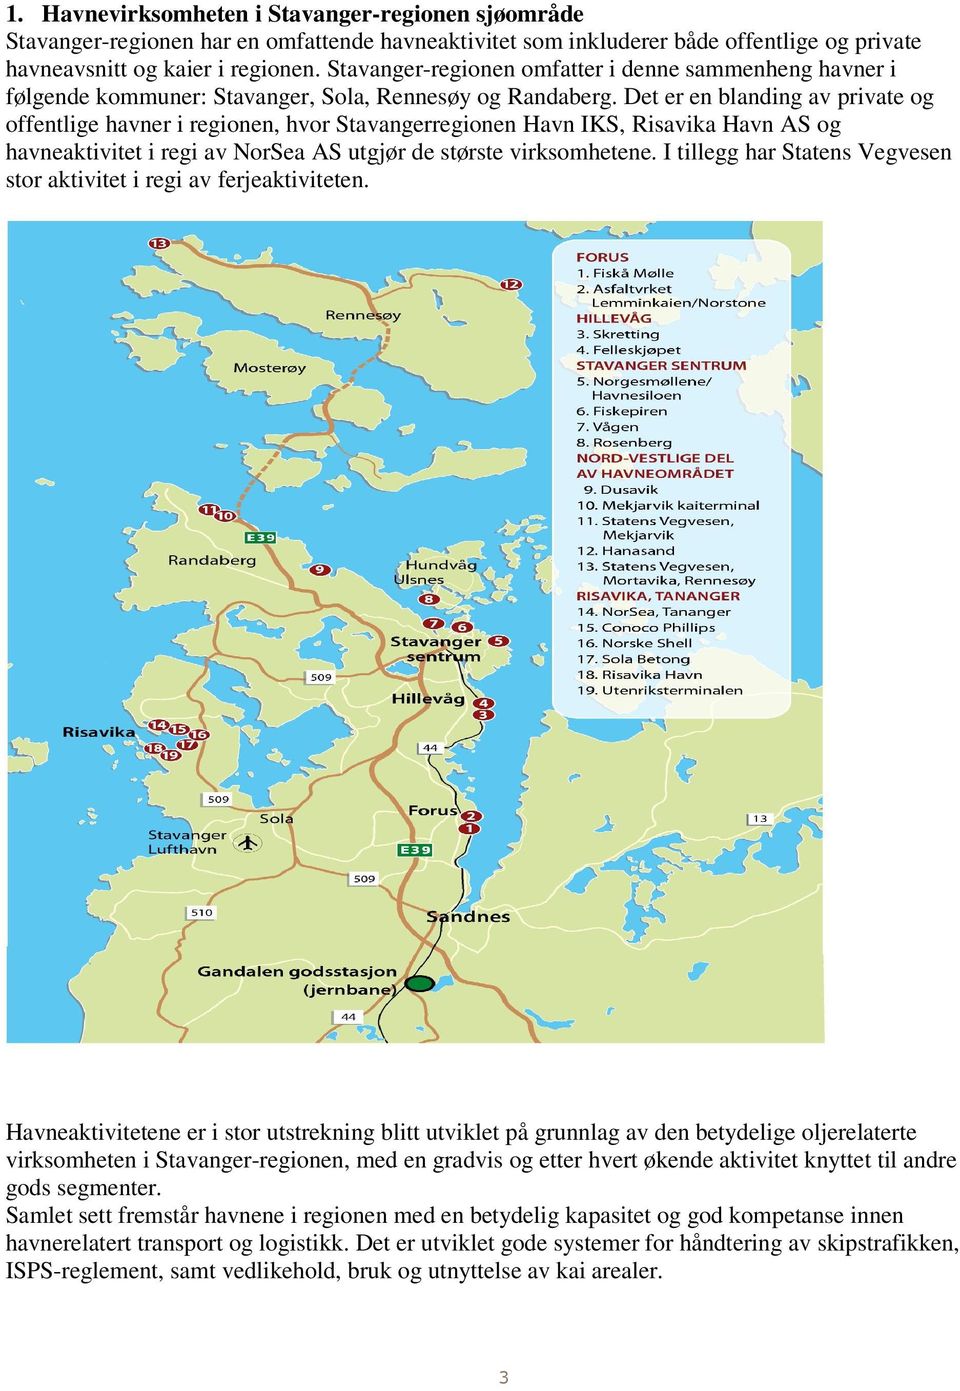 Det er en blanding av private og offentlige havner i regionen, hvor Stavangerregionen Havn IKS, Risavika Havn AS og havneaktivitet i regi av NorSea AS utgjør de største virksomhetene.